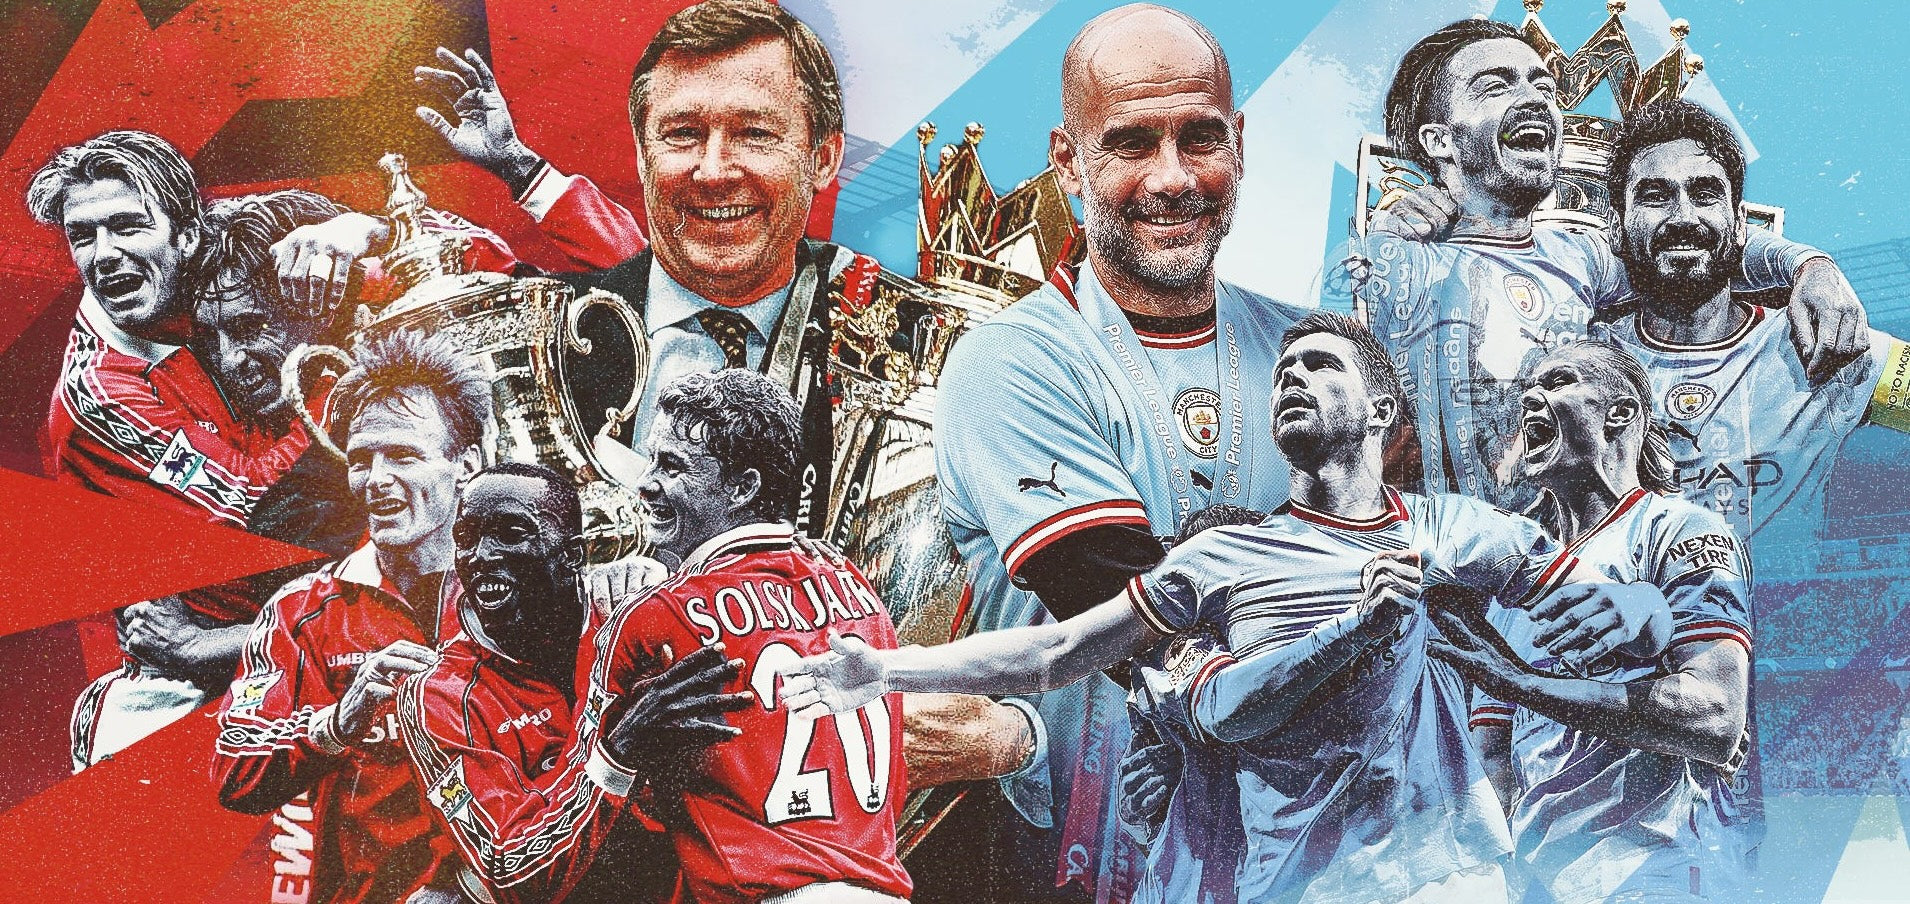 Le pouls de la passion : La rivalité entre Manchester et le football